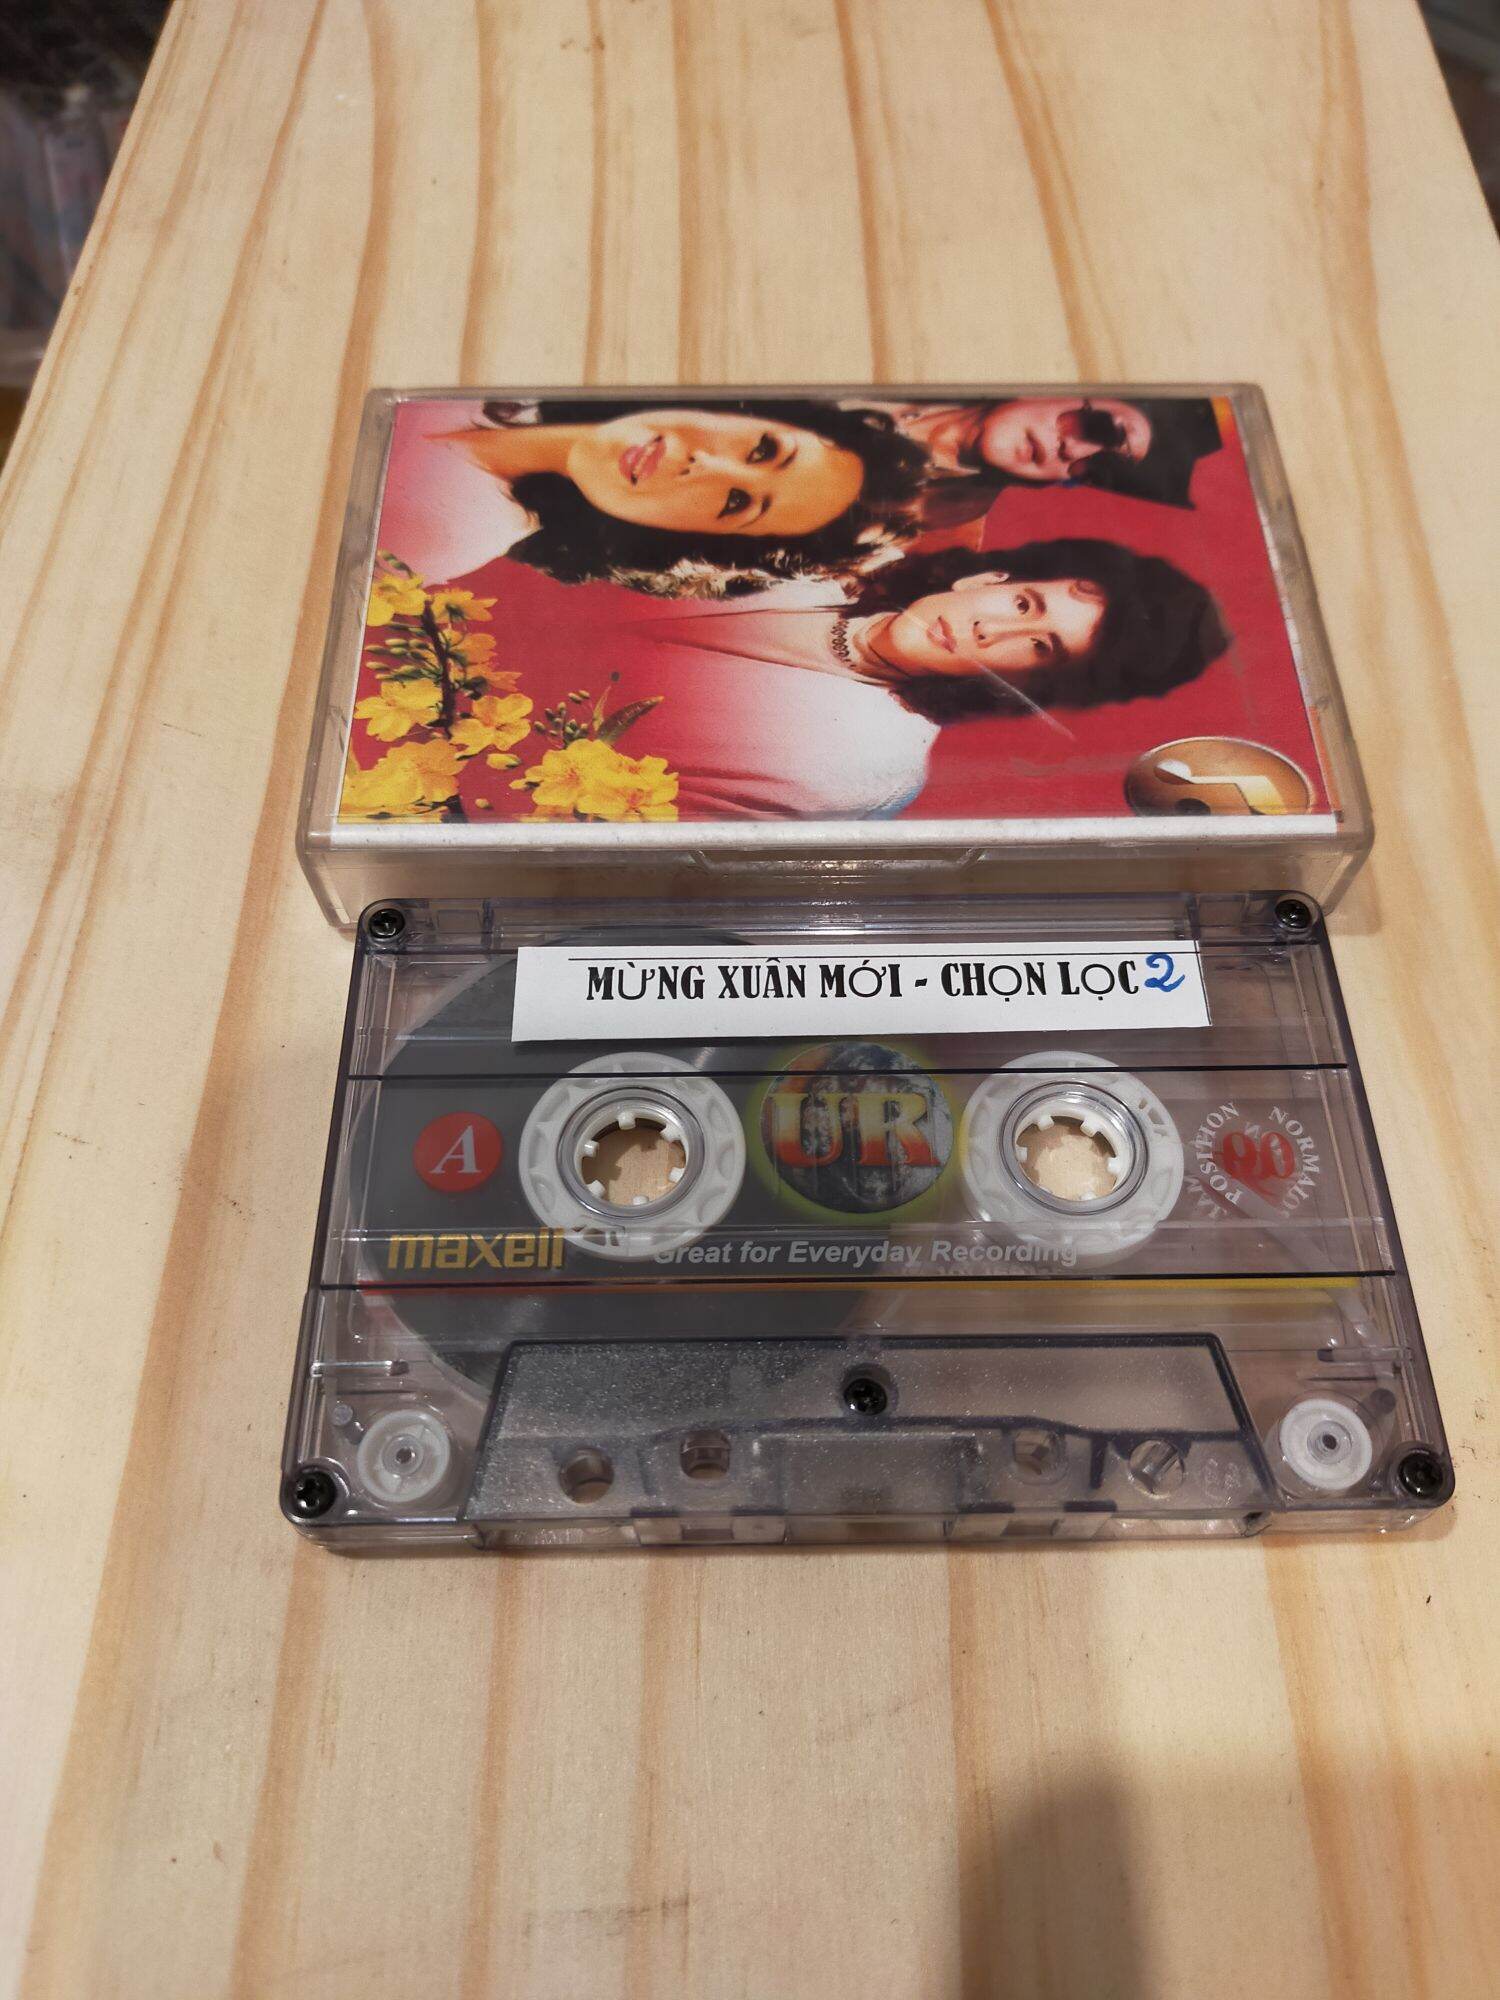 1 băng cassette maxell Ur 90s nhạc Xuân xưa( lưu ý: đây là băng cũ